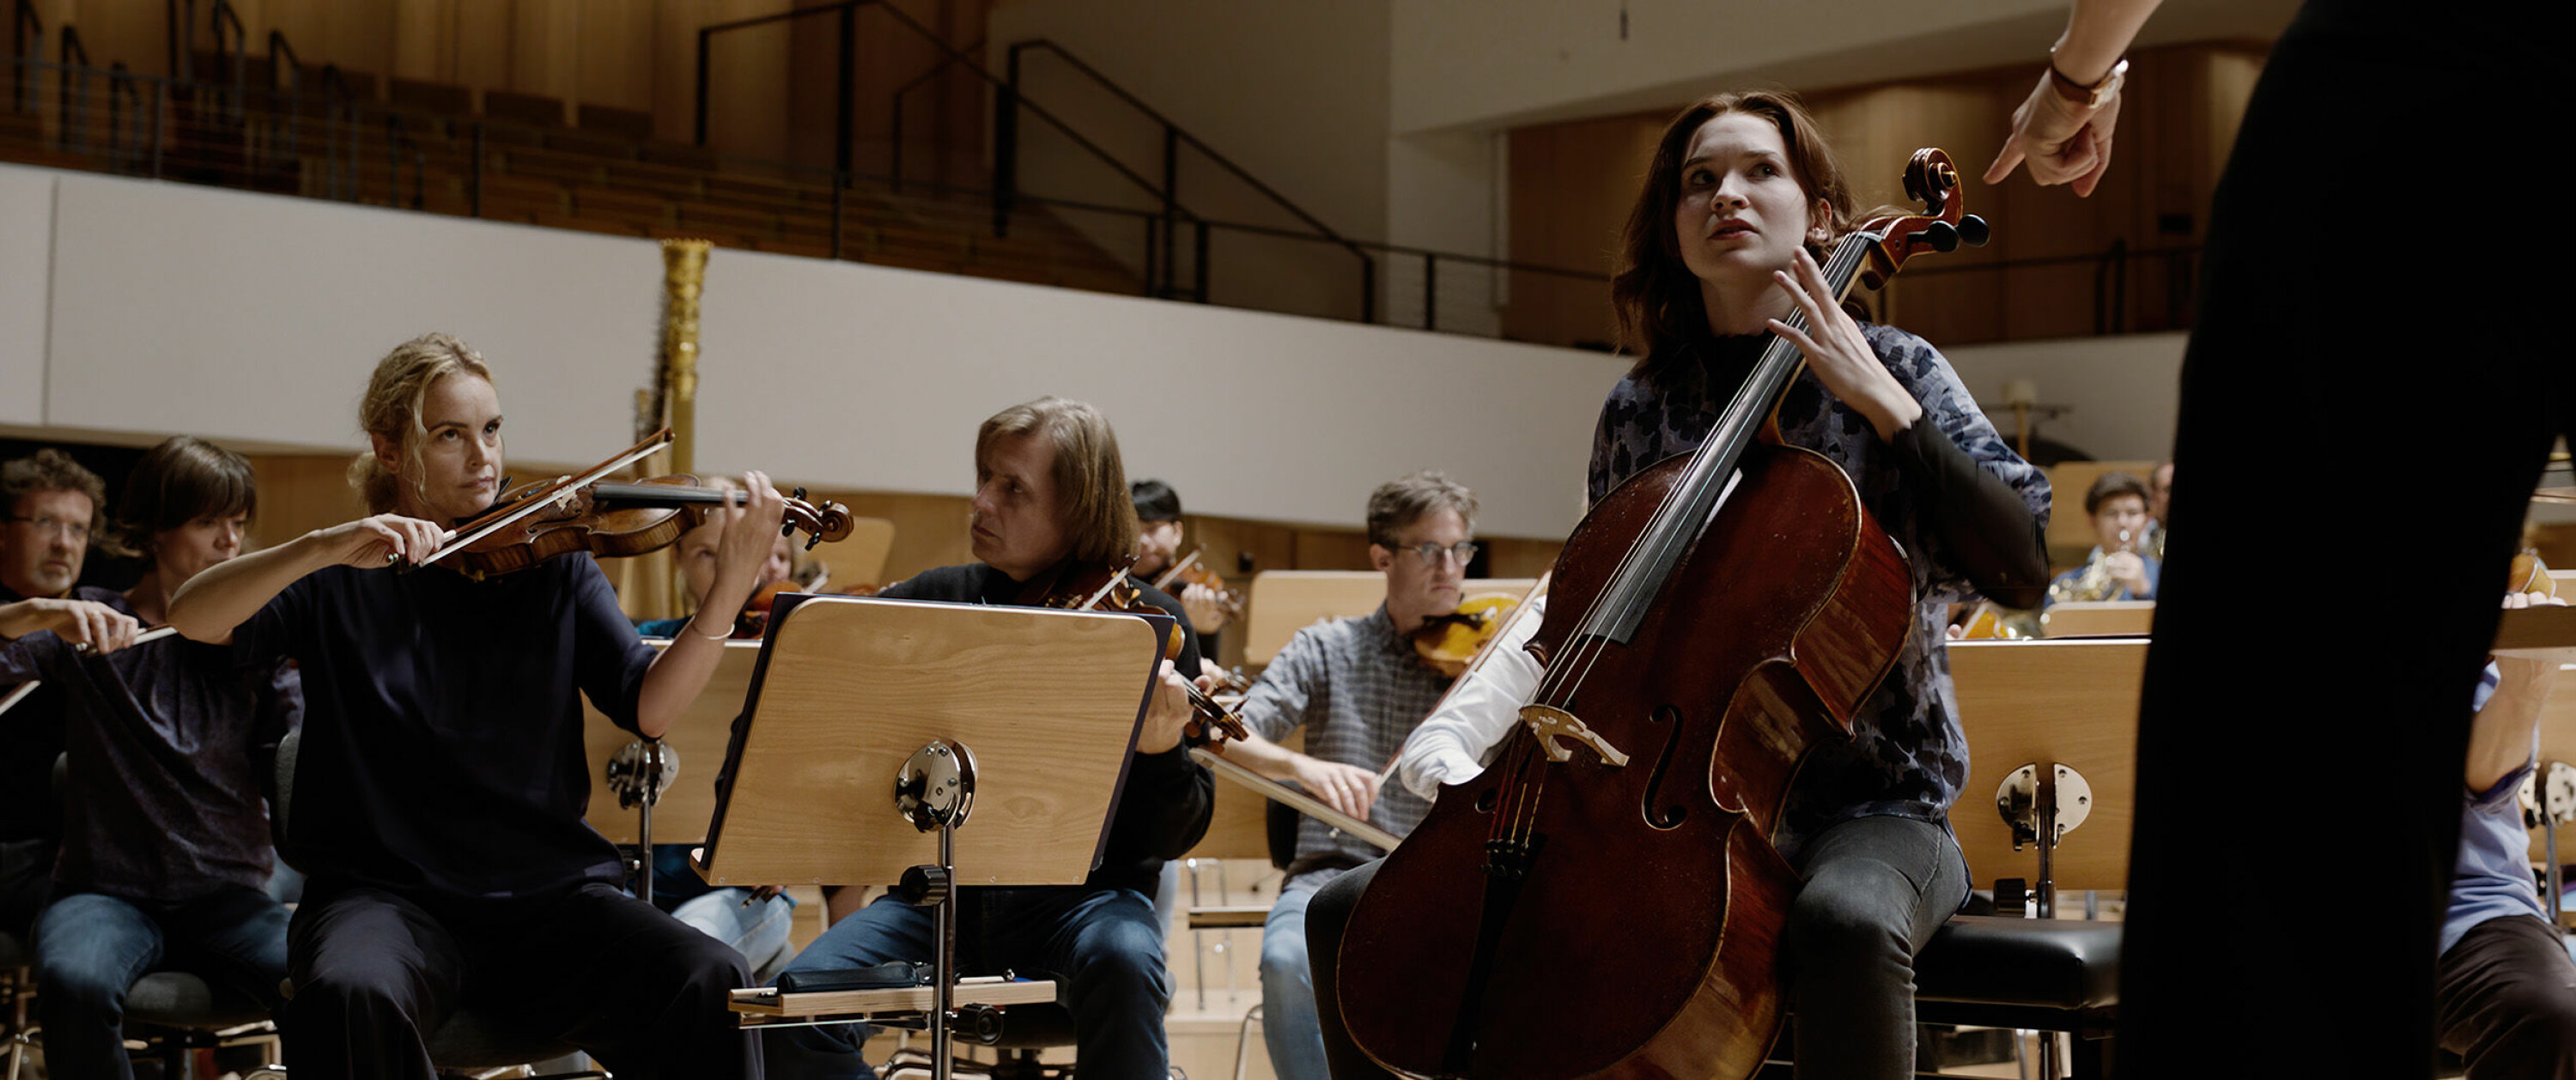 EN SJALU FIOLINIST: Gnisninger i filharmonien når en ung lovende og altfor tiltrekkende cello-spiller tar opp en ny plass